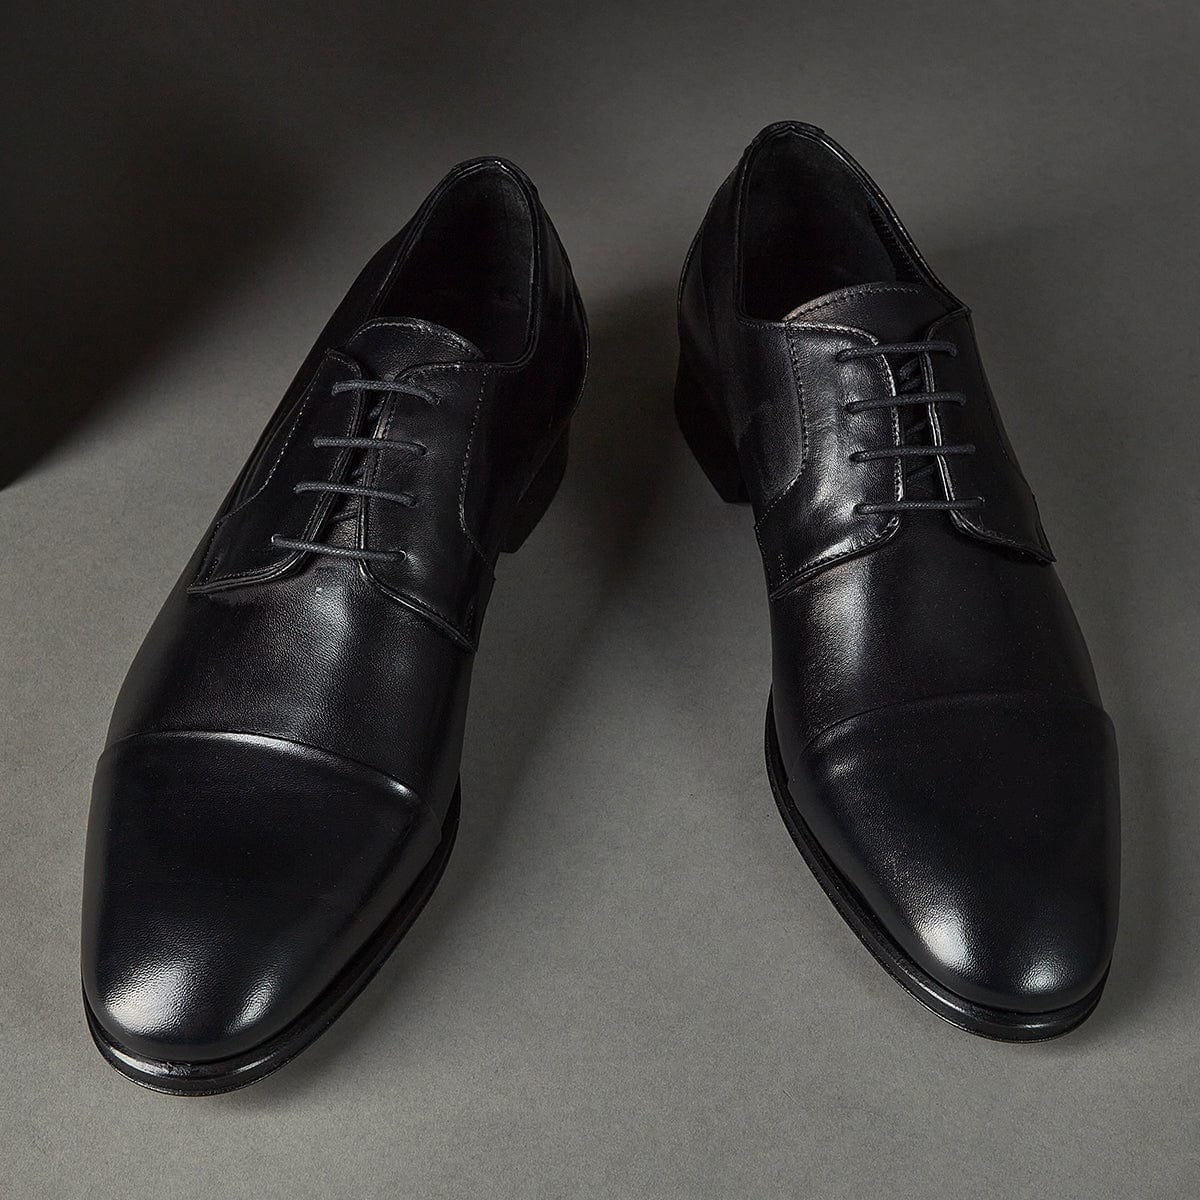 Michele black - 124 Shoes